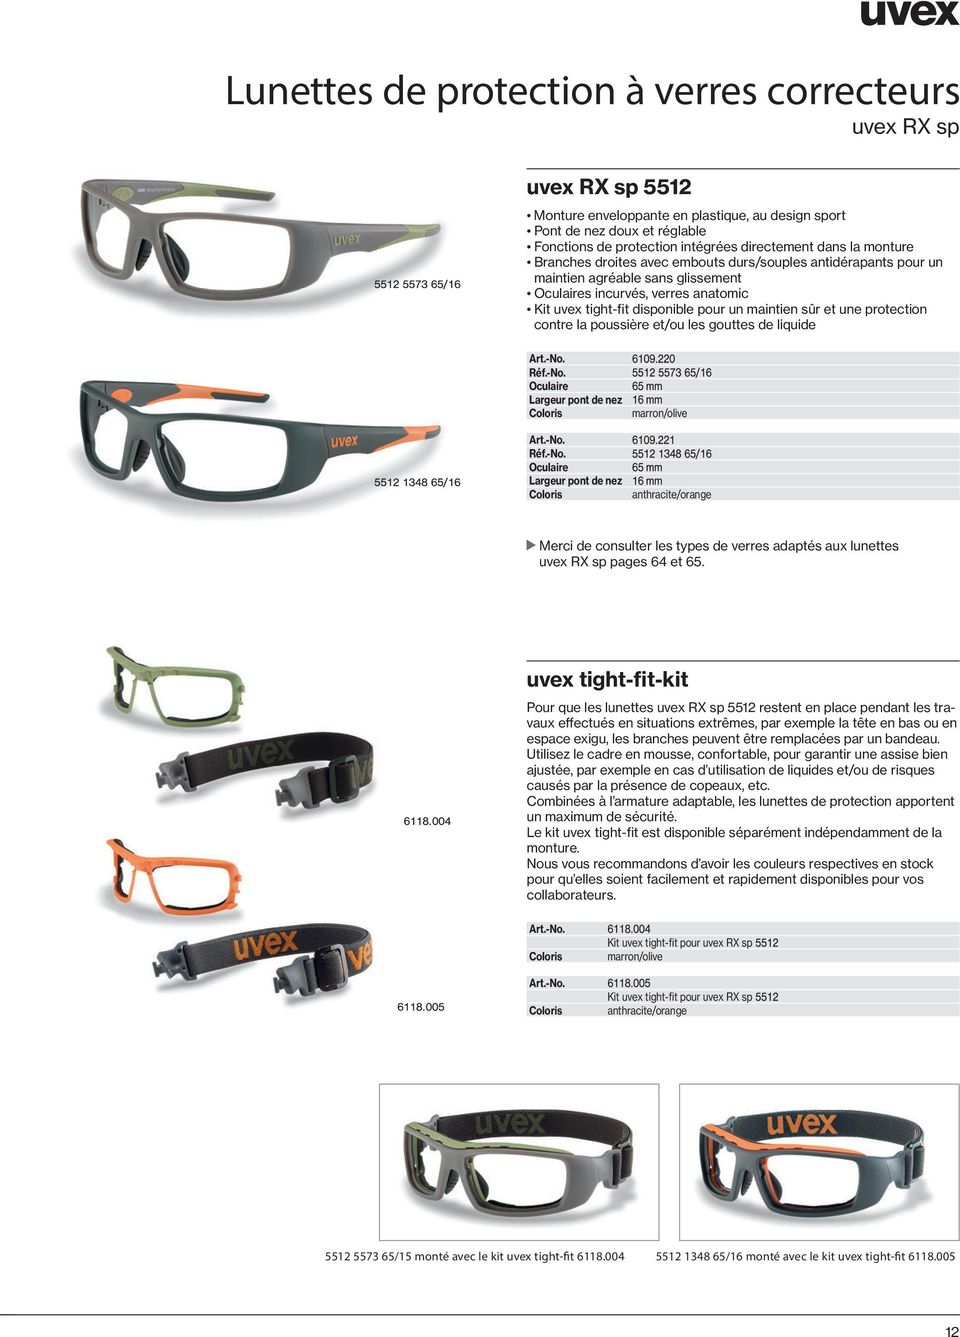 gouttes de liquide marron/olive anthracite/orange Merci de consulter les types de verres adaptés aux lunettes uvex RX sp pages 64 et 65.